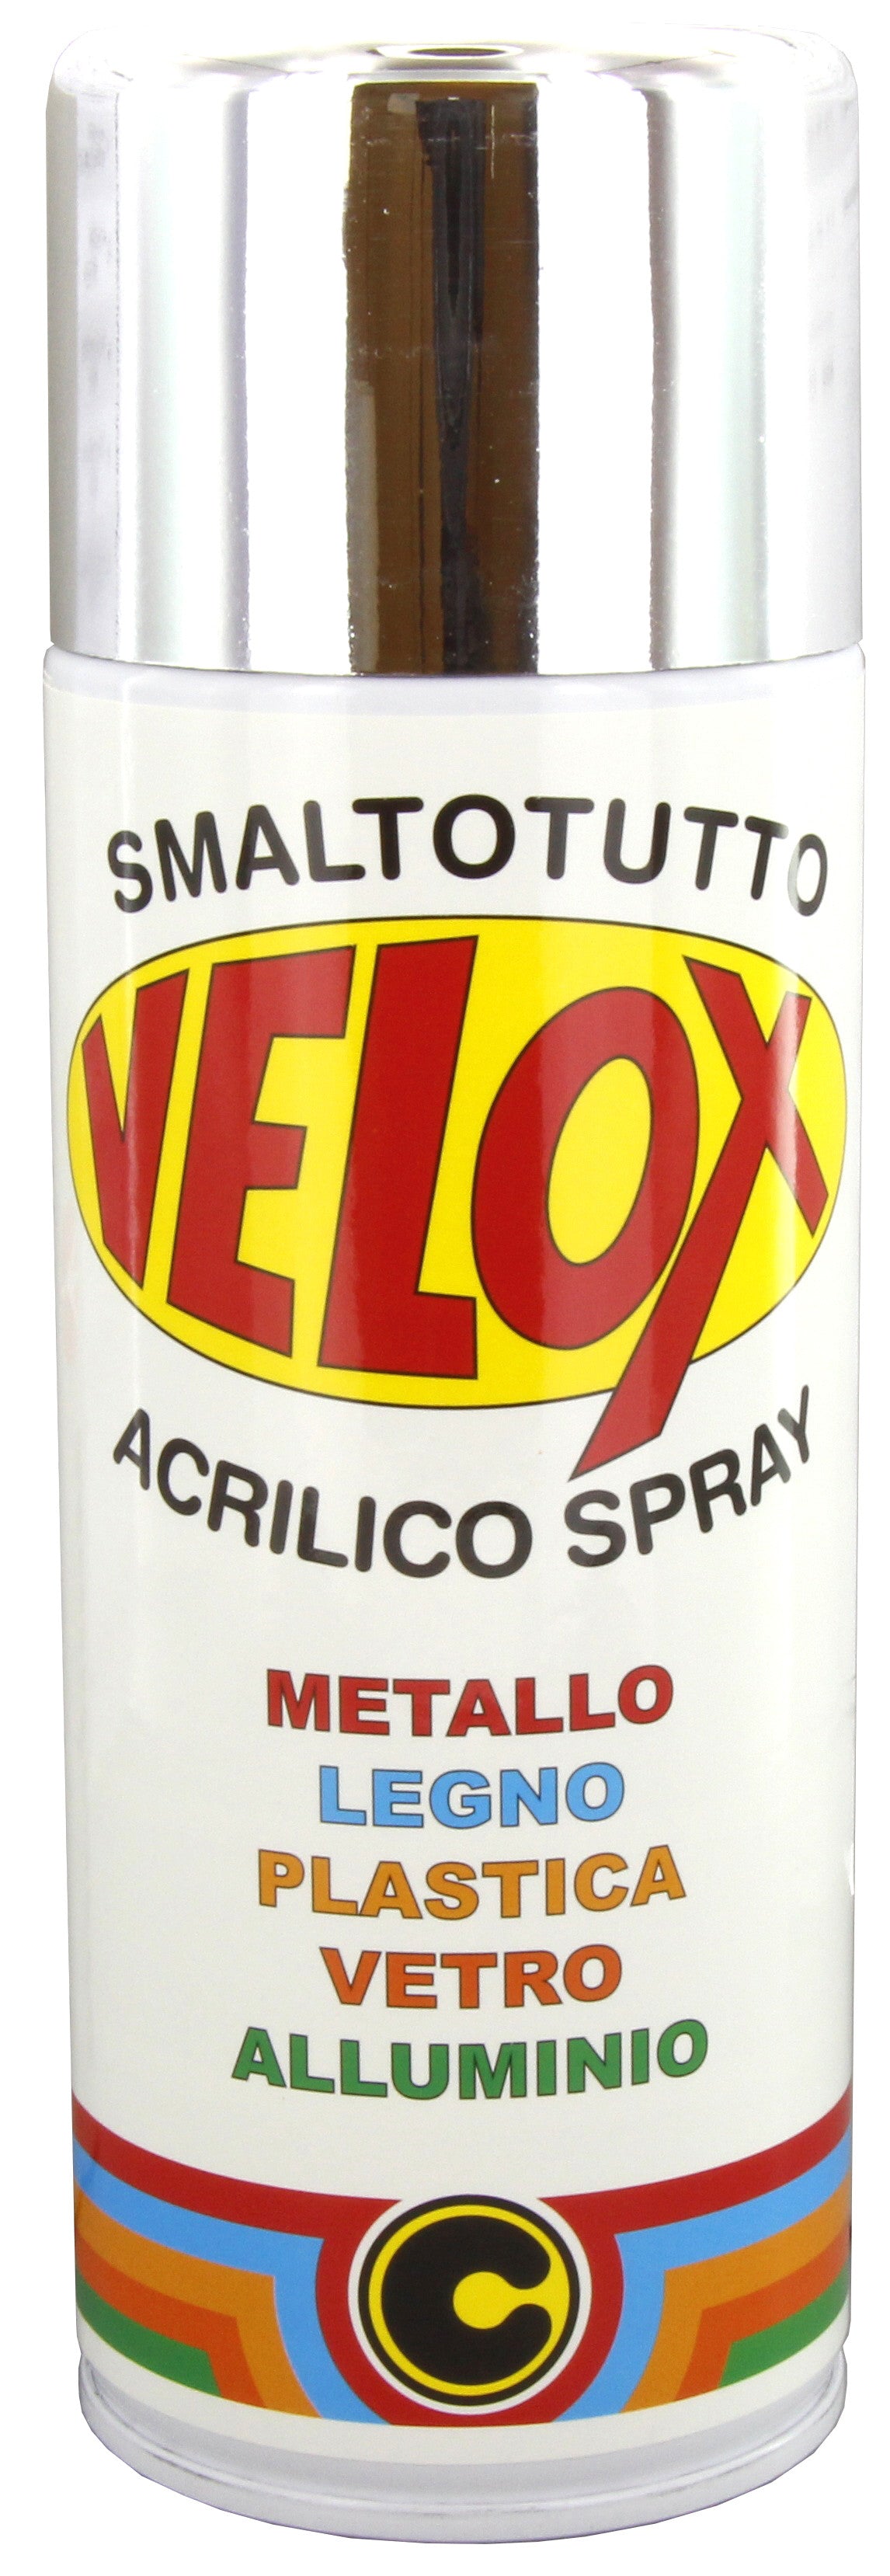 Velox spray effetto specchiante argento ITAL G.E.T.E.